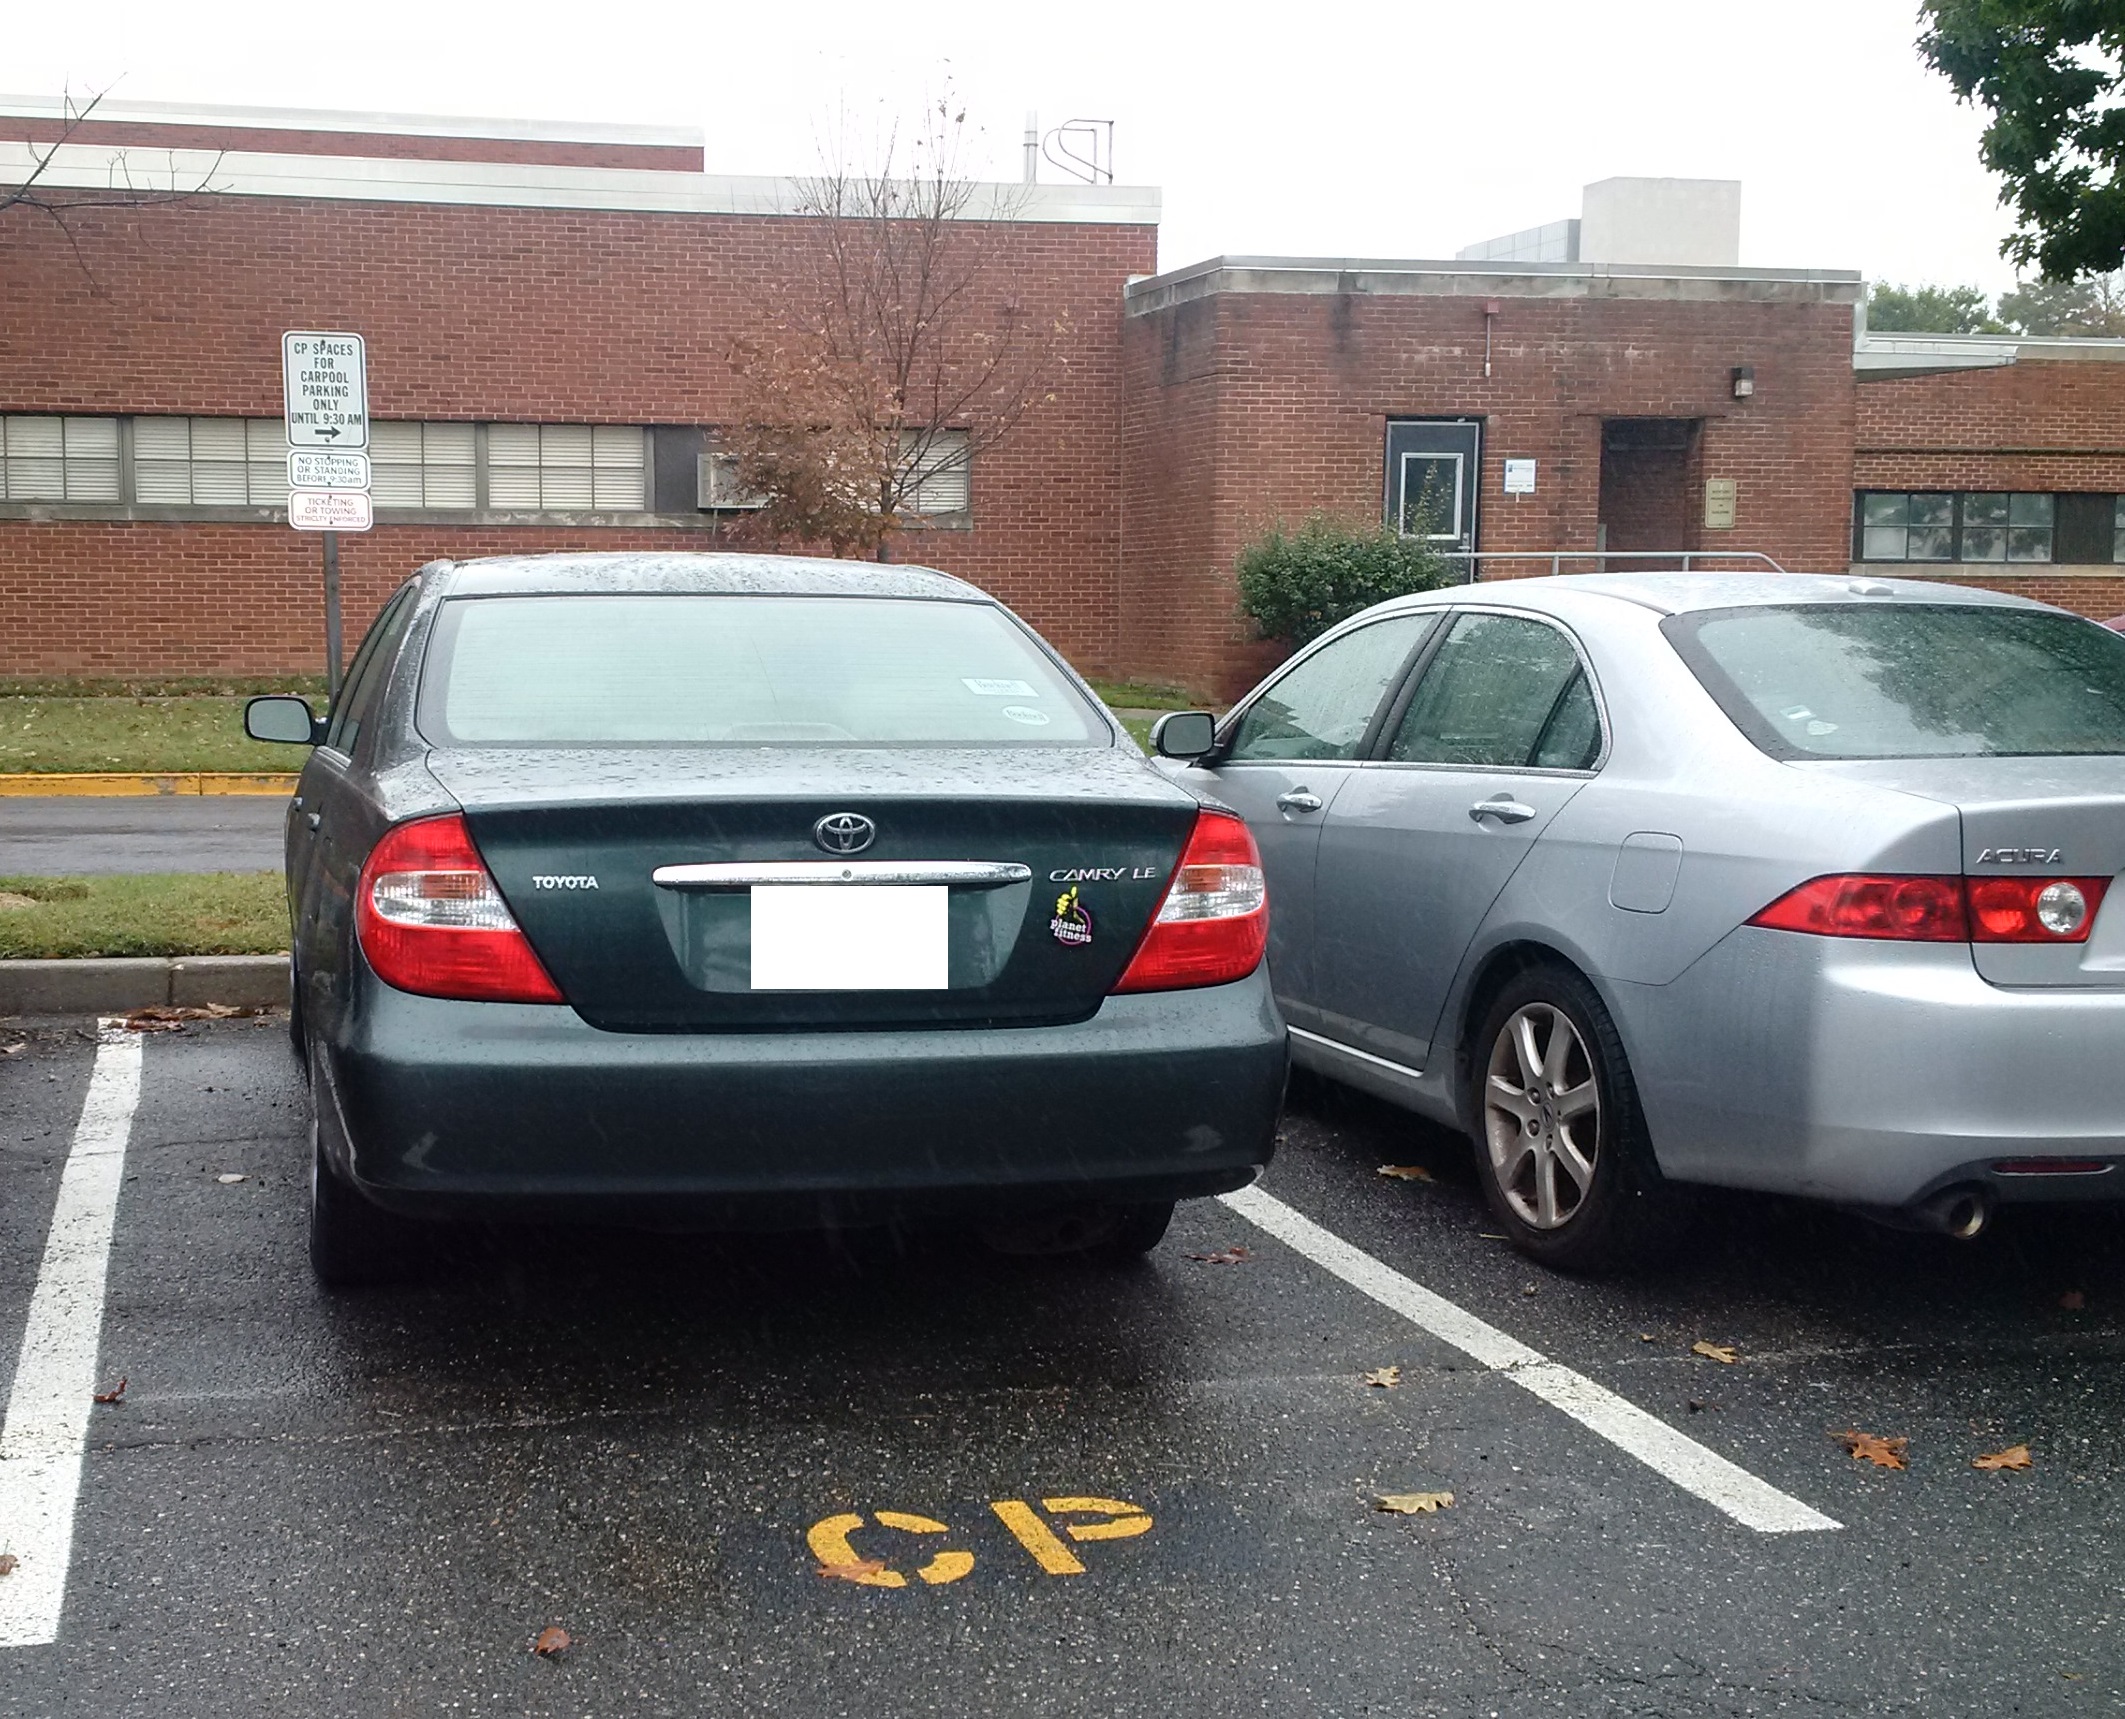 Image of NIH Carpool Parking Area